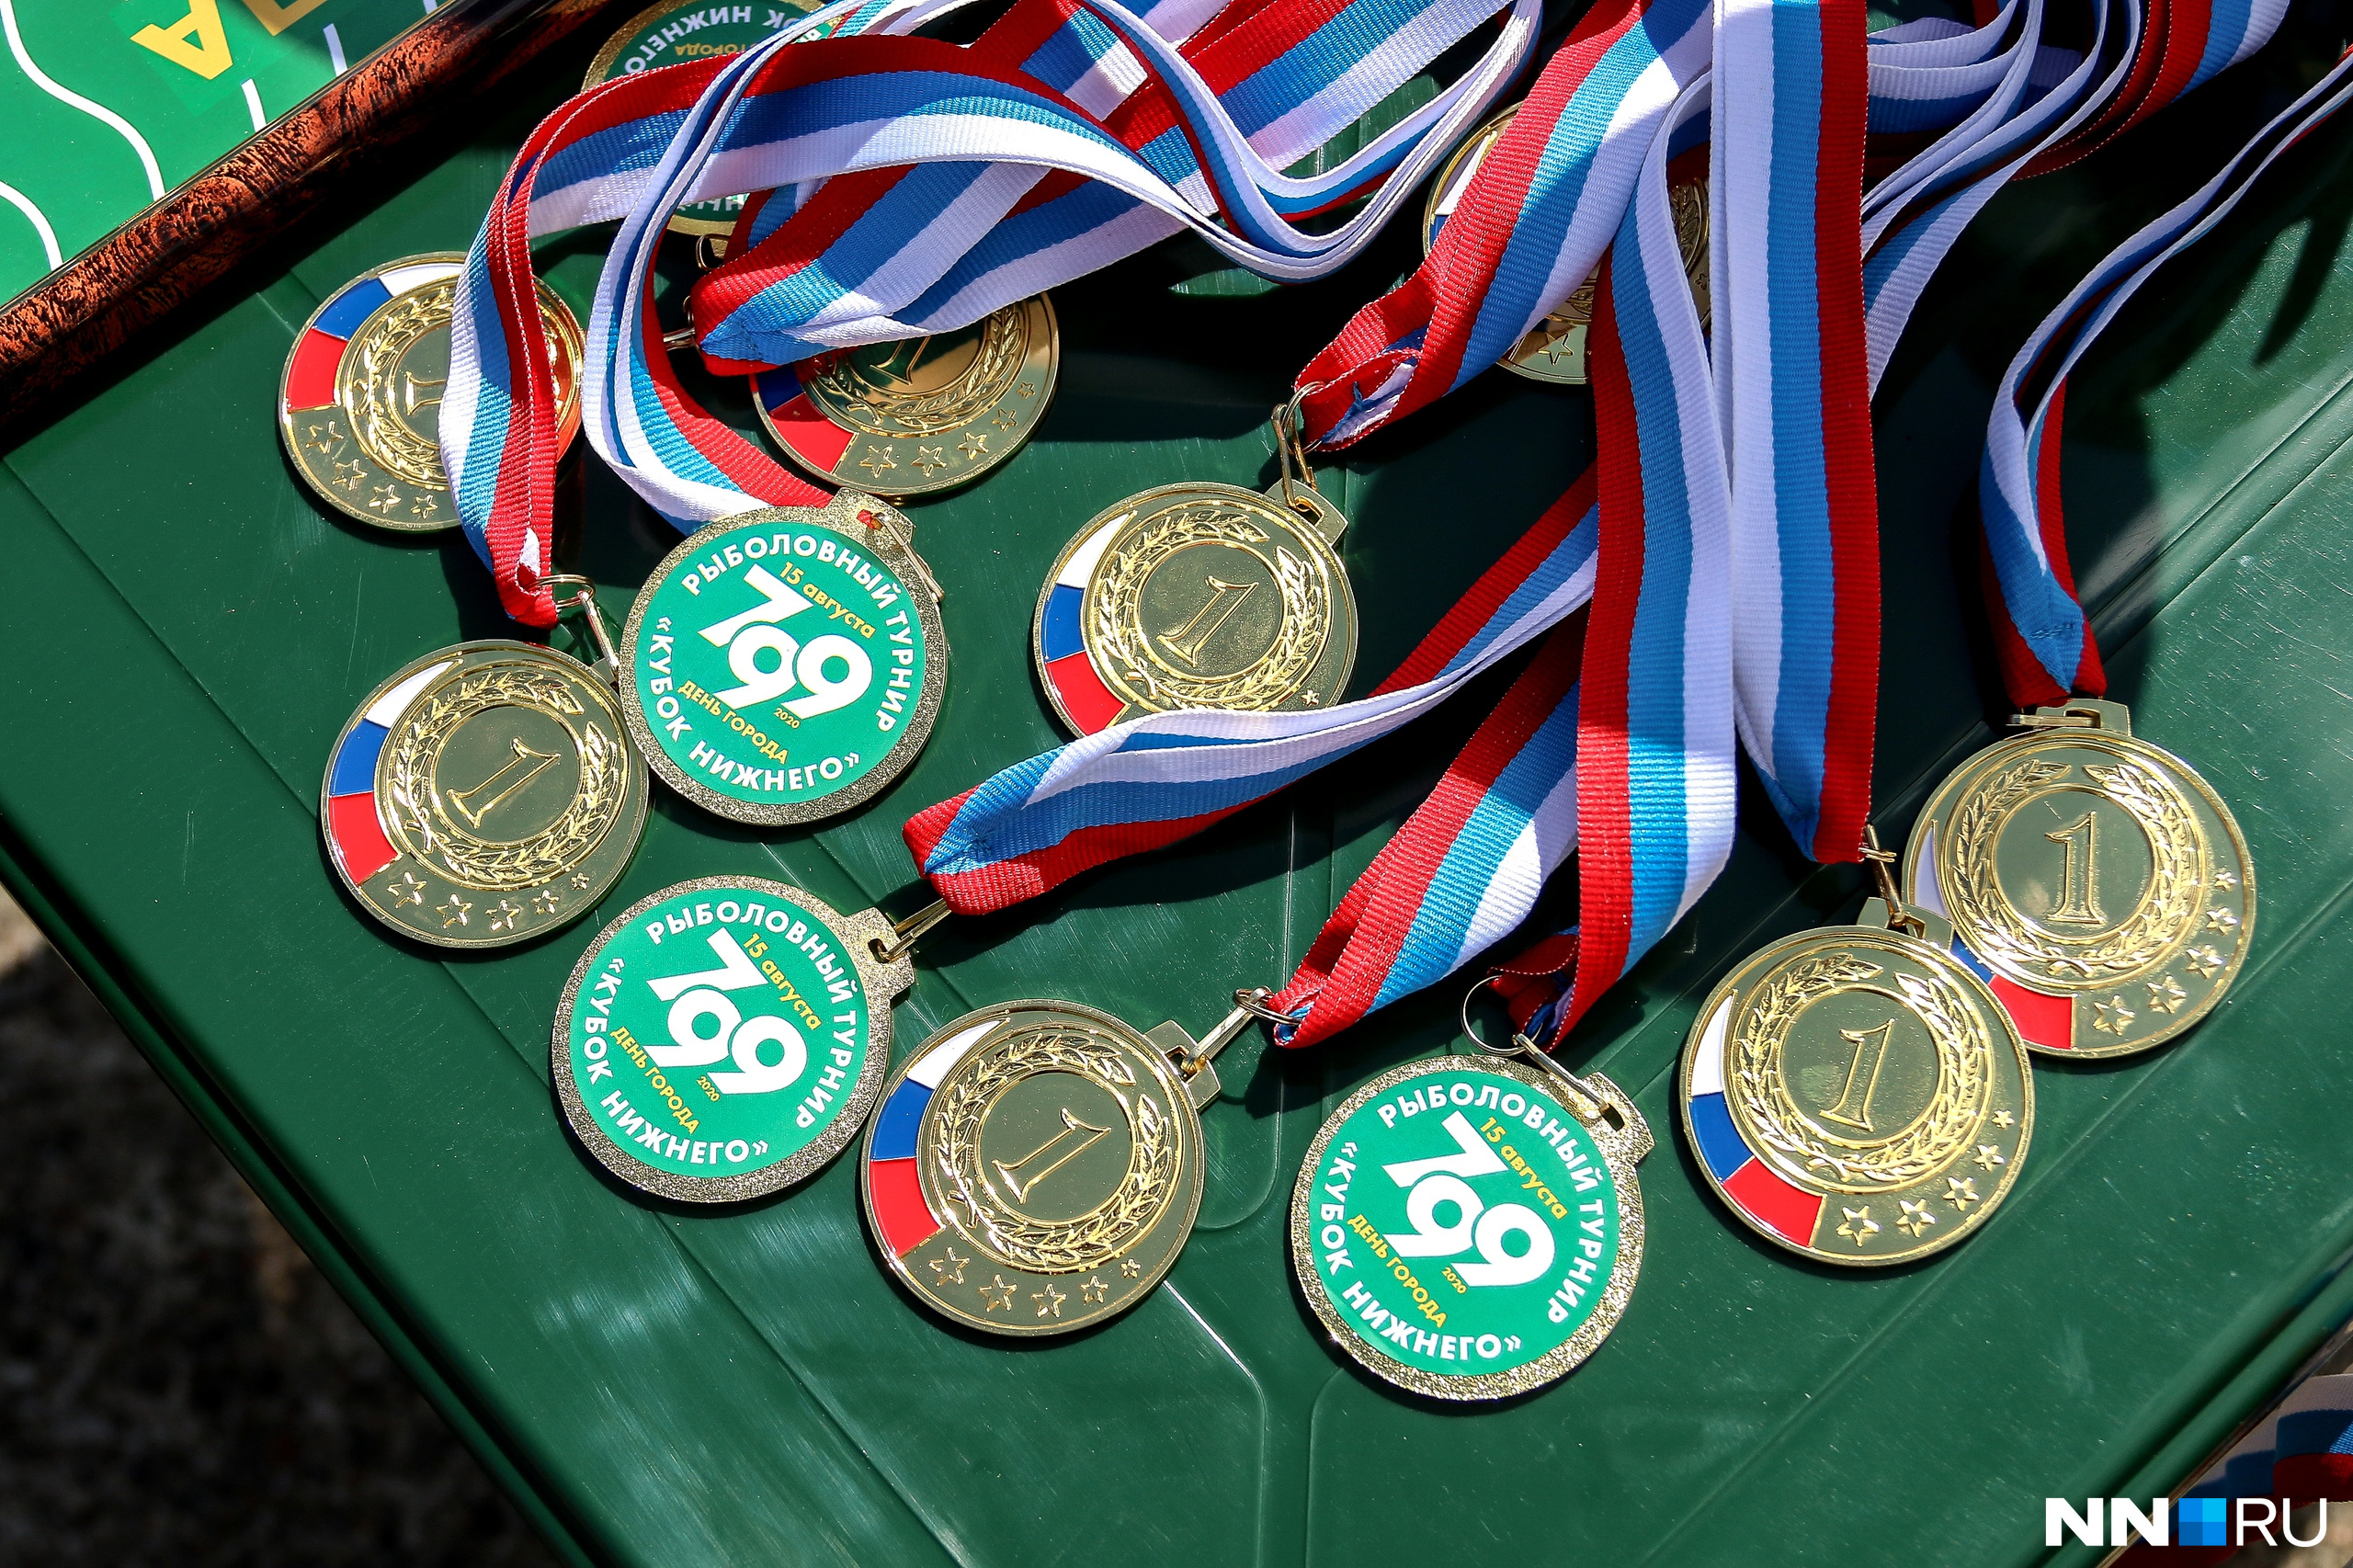 Сколько спортсменов получили медали. Победившие в соревнованиях спортсмены получили ценные призы.